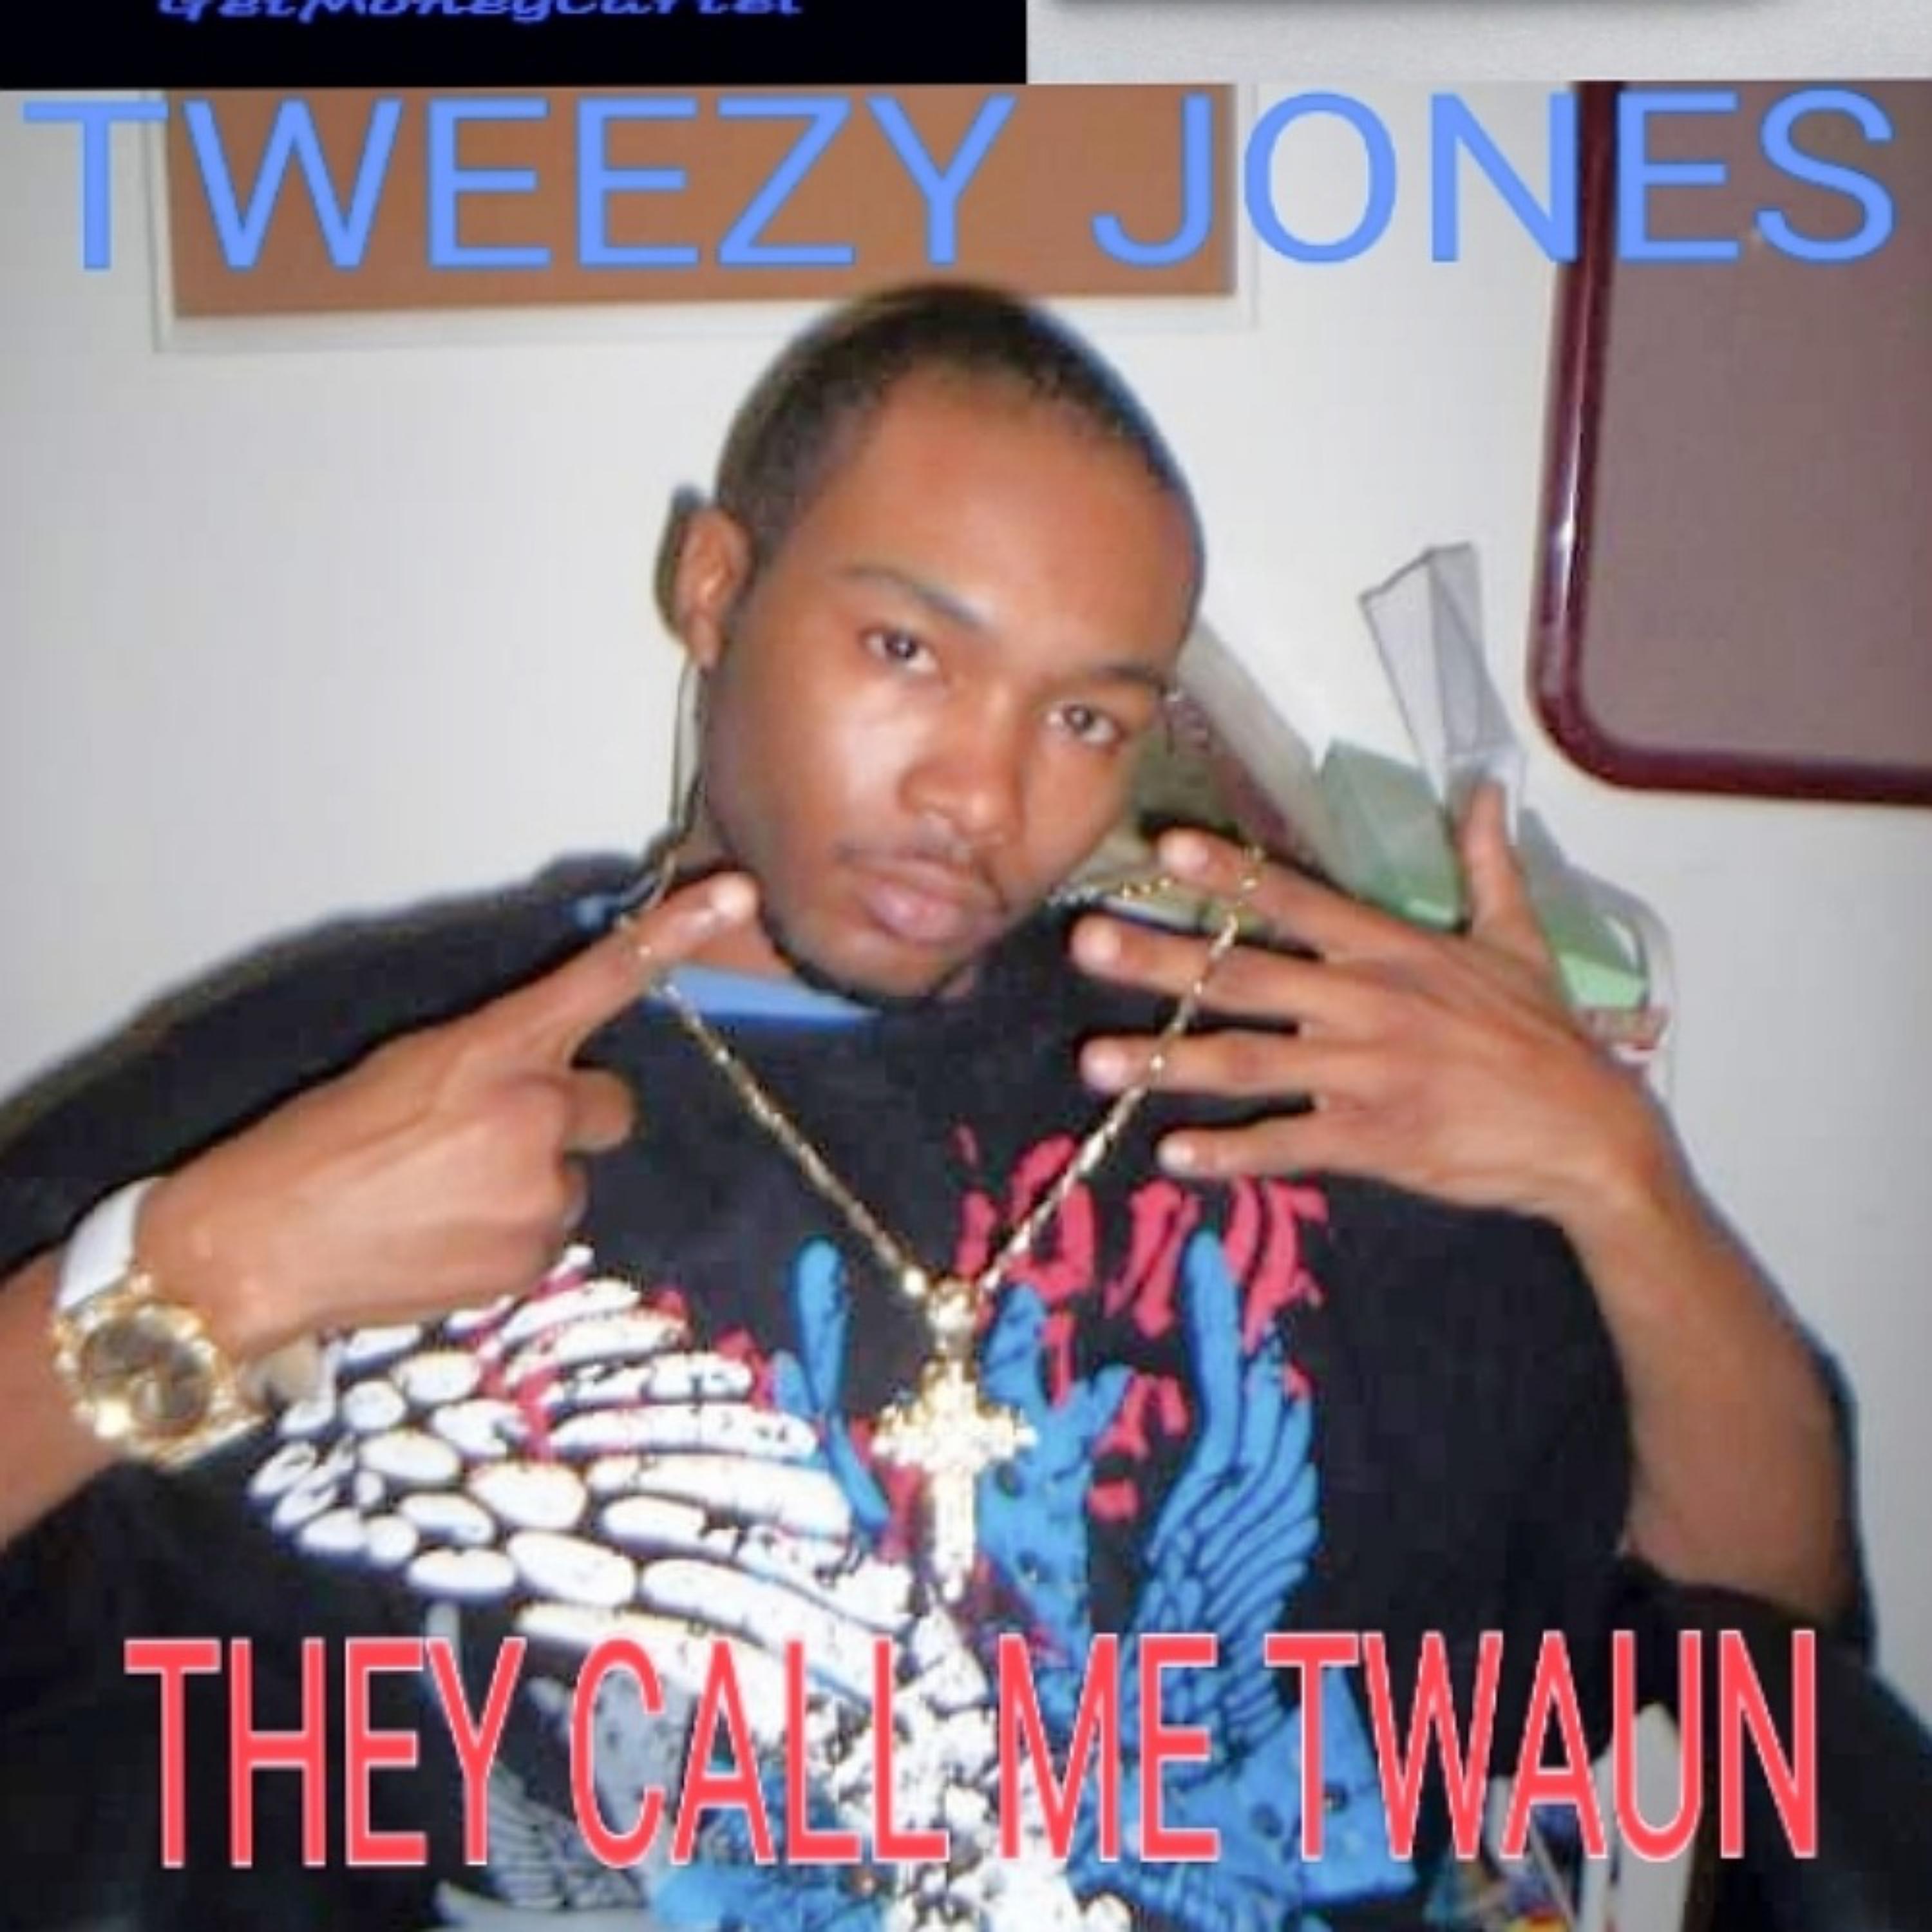 Tweezy Jones - One Night Stand